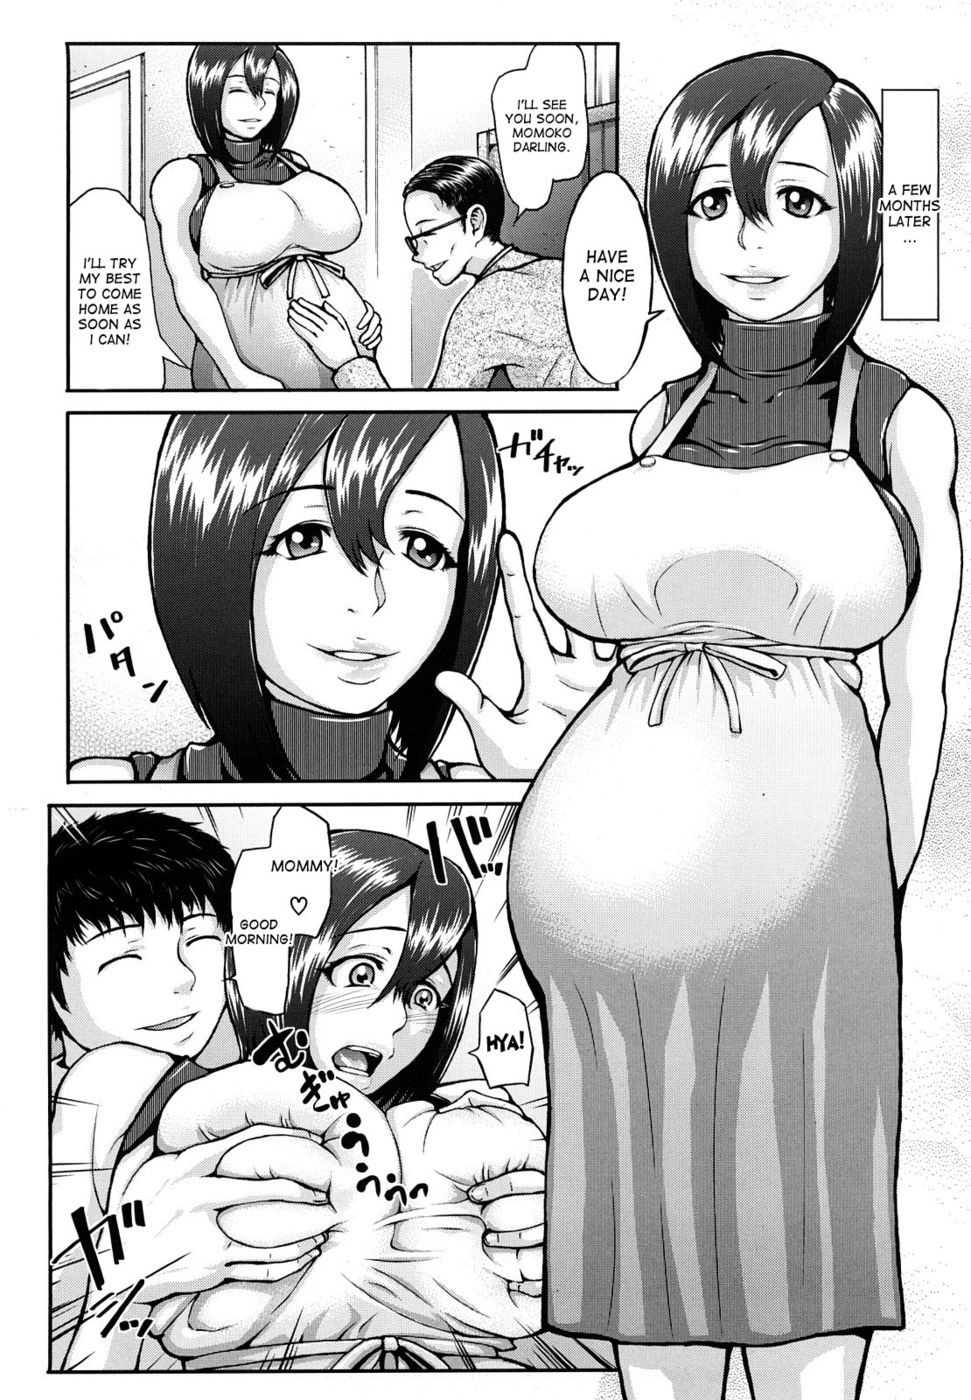 Порно комиксы беременная мать фото 81